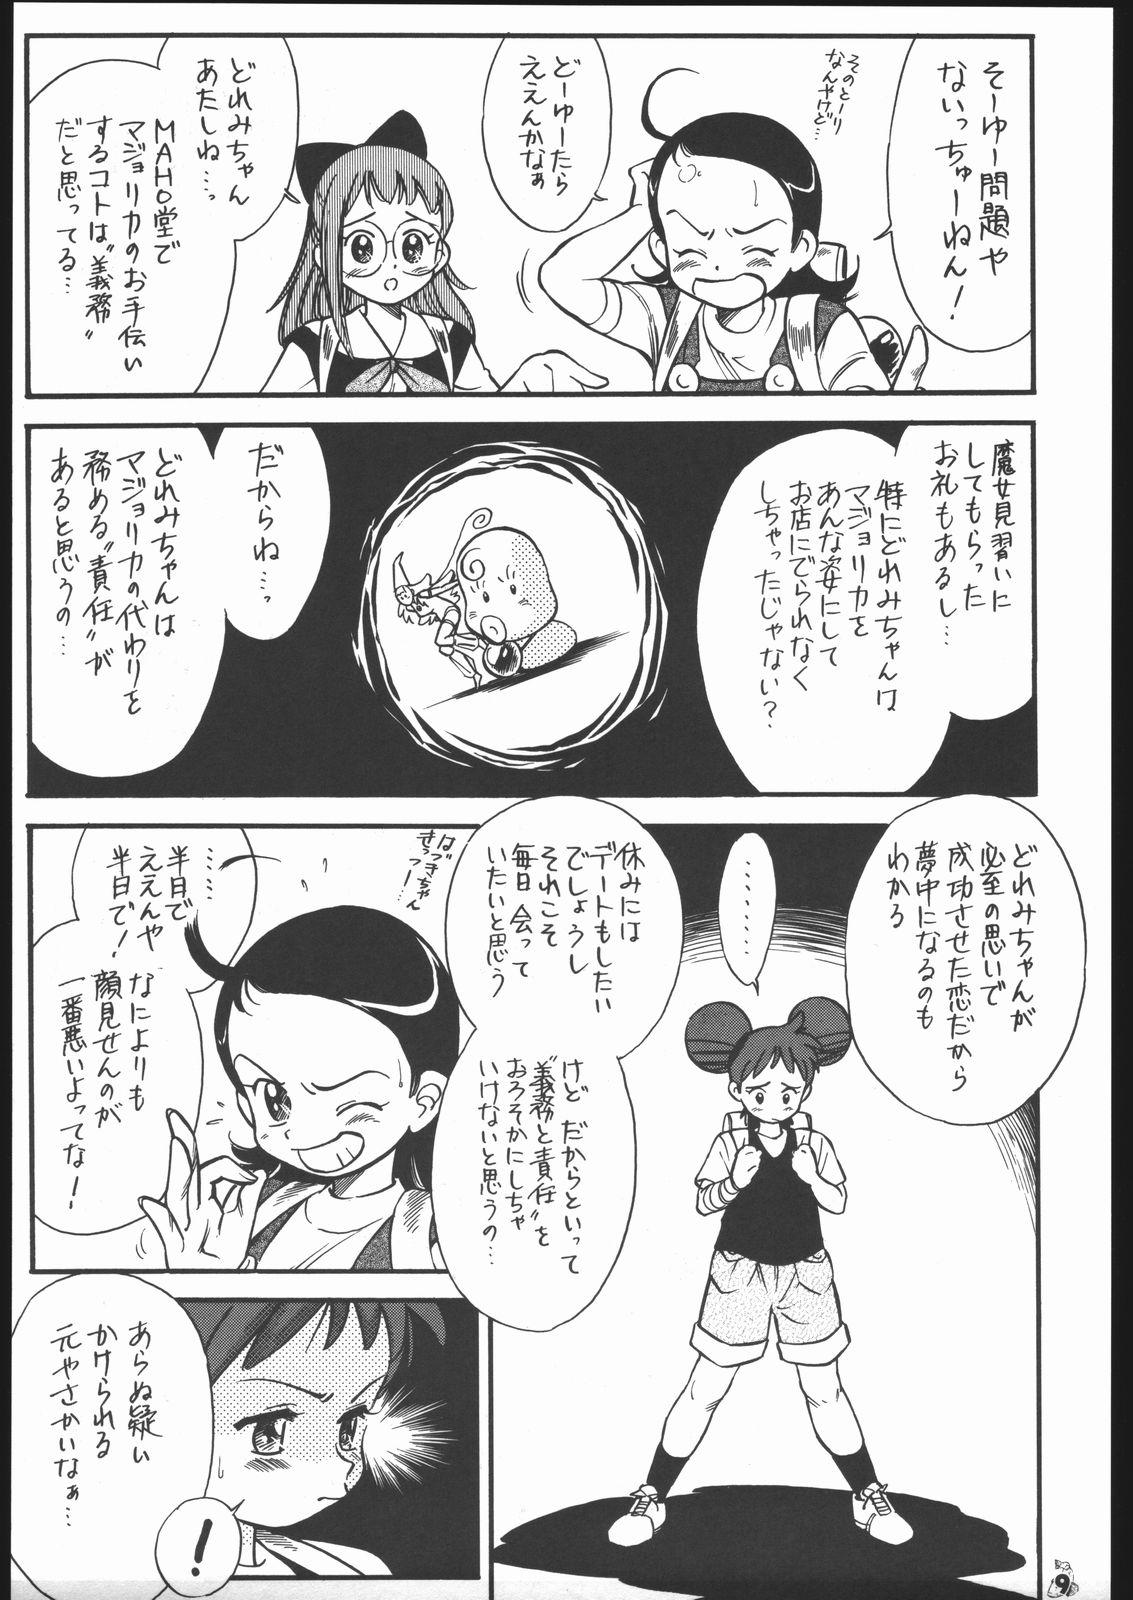 Cuzinho Oudou - Sakura taisen Ojamajo doremi Virtua fighter Brazzers - Page 8